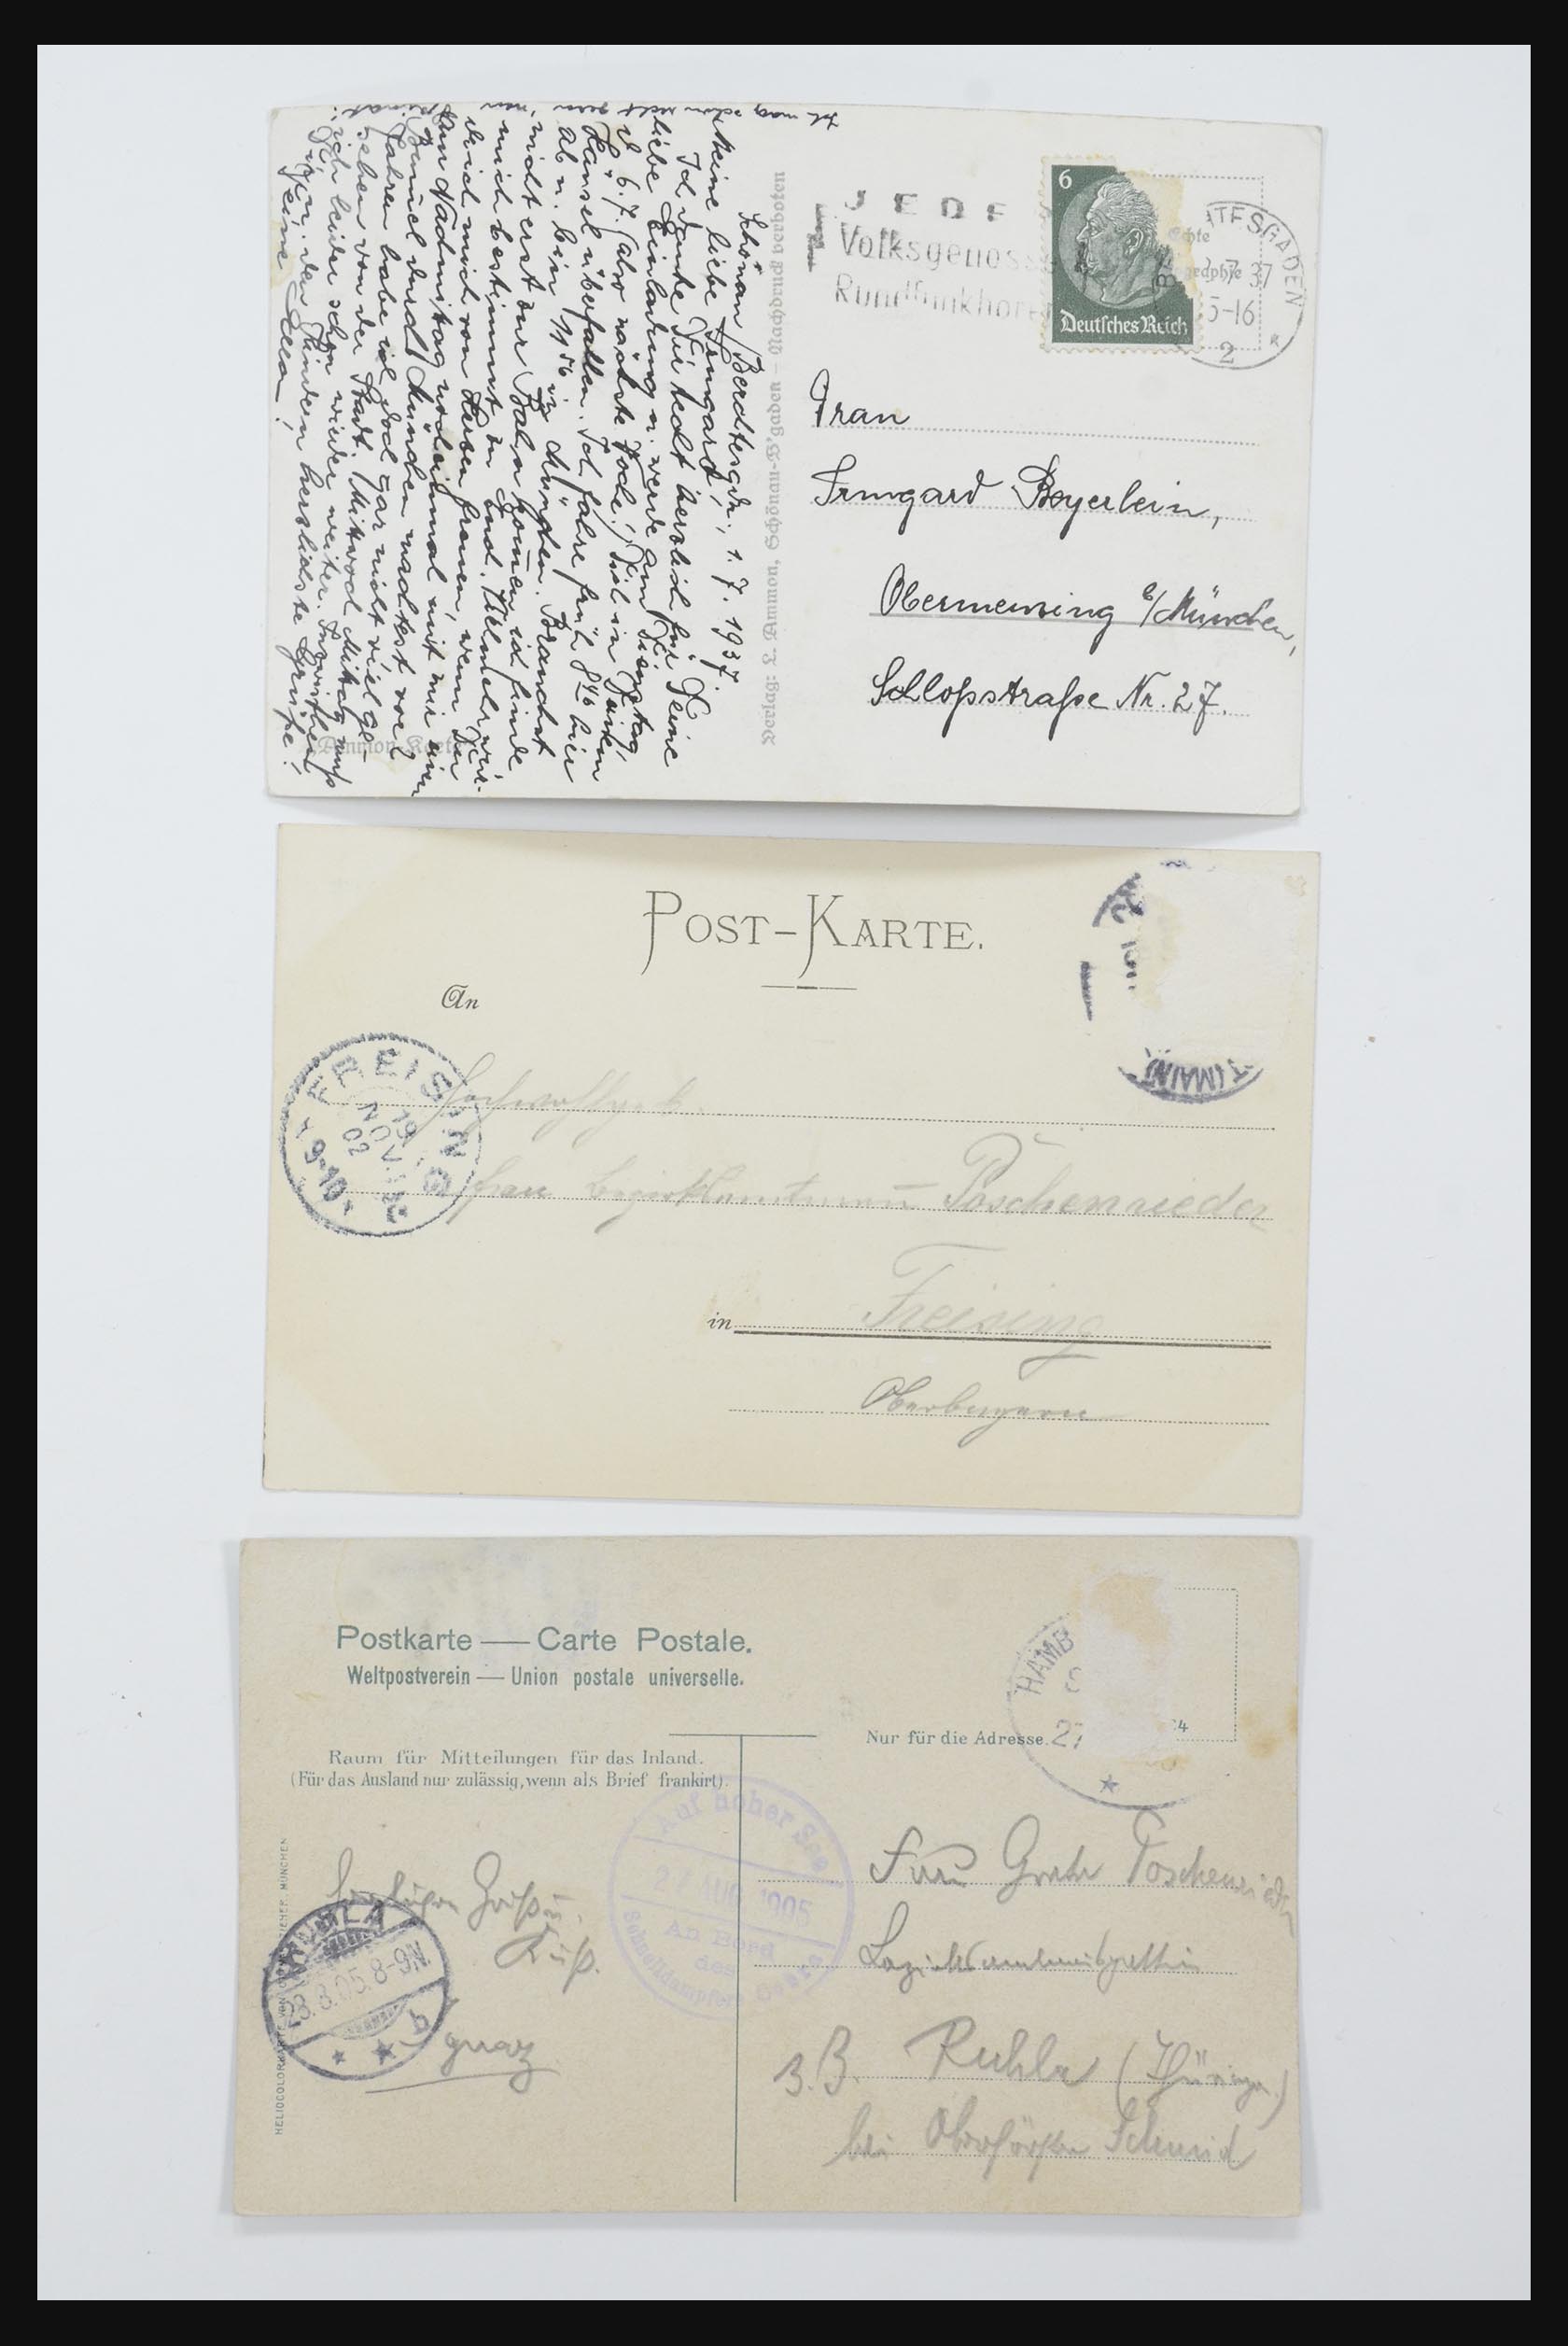 31952 071 - 31952 German Reich cards.